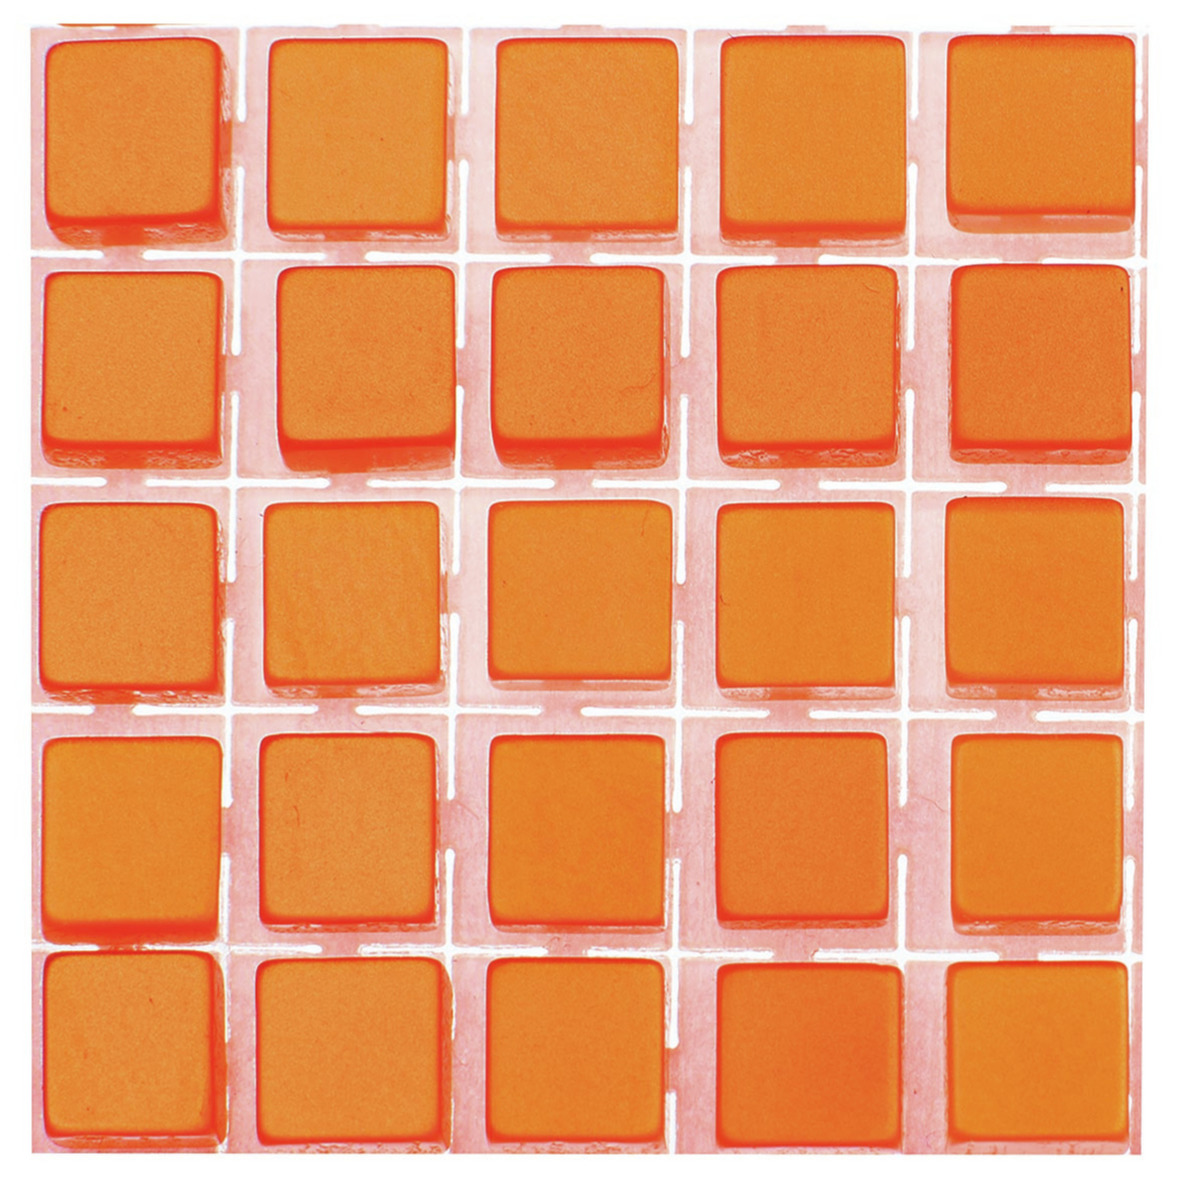 119x stuks mozaieken maken steentjes-tegels kleur oranje 5 x 5 x 2 mm